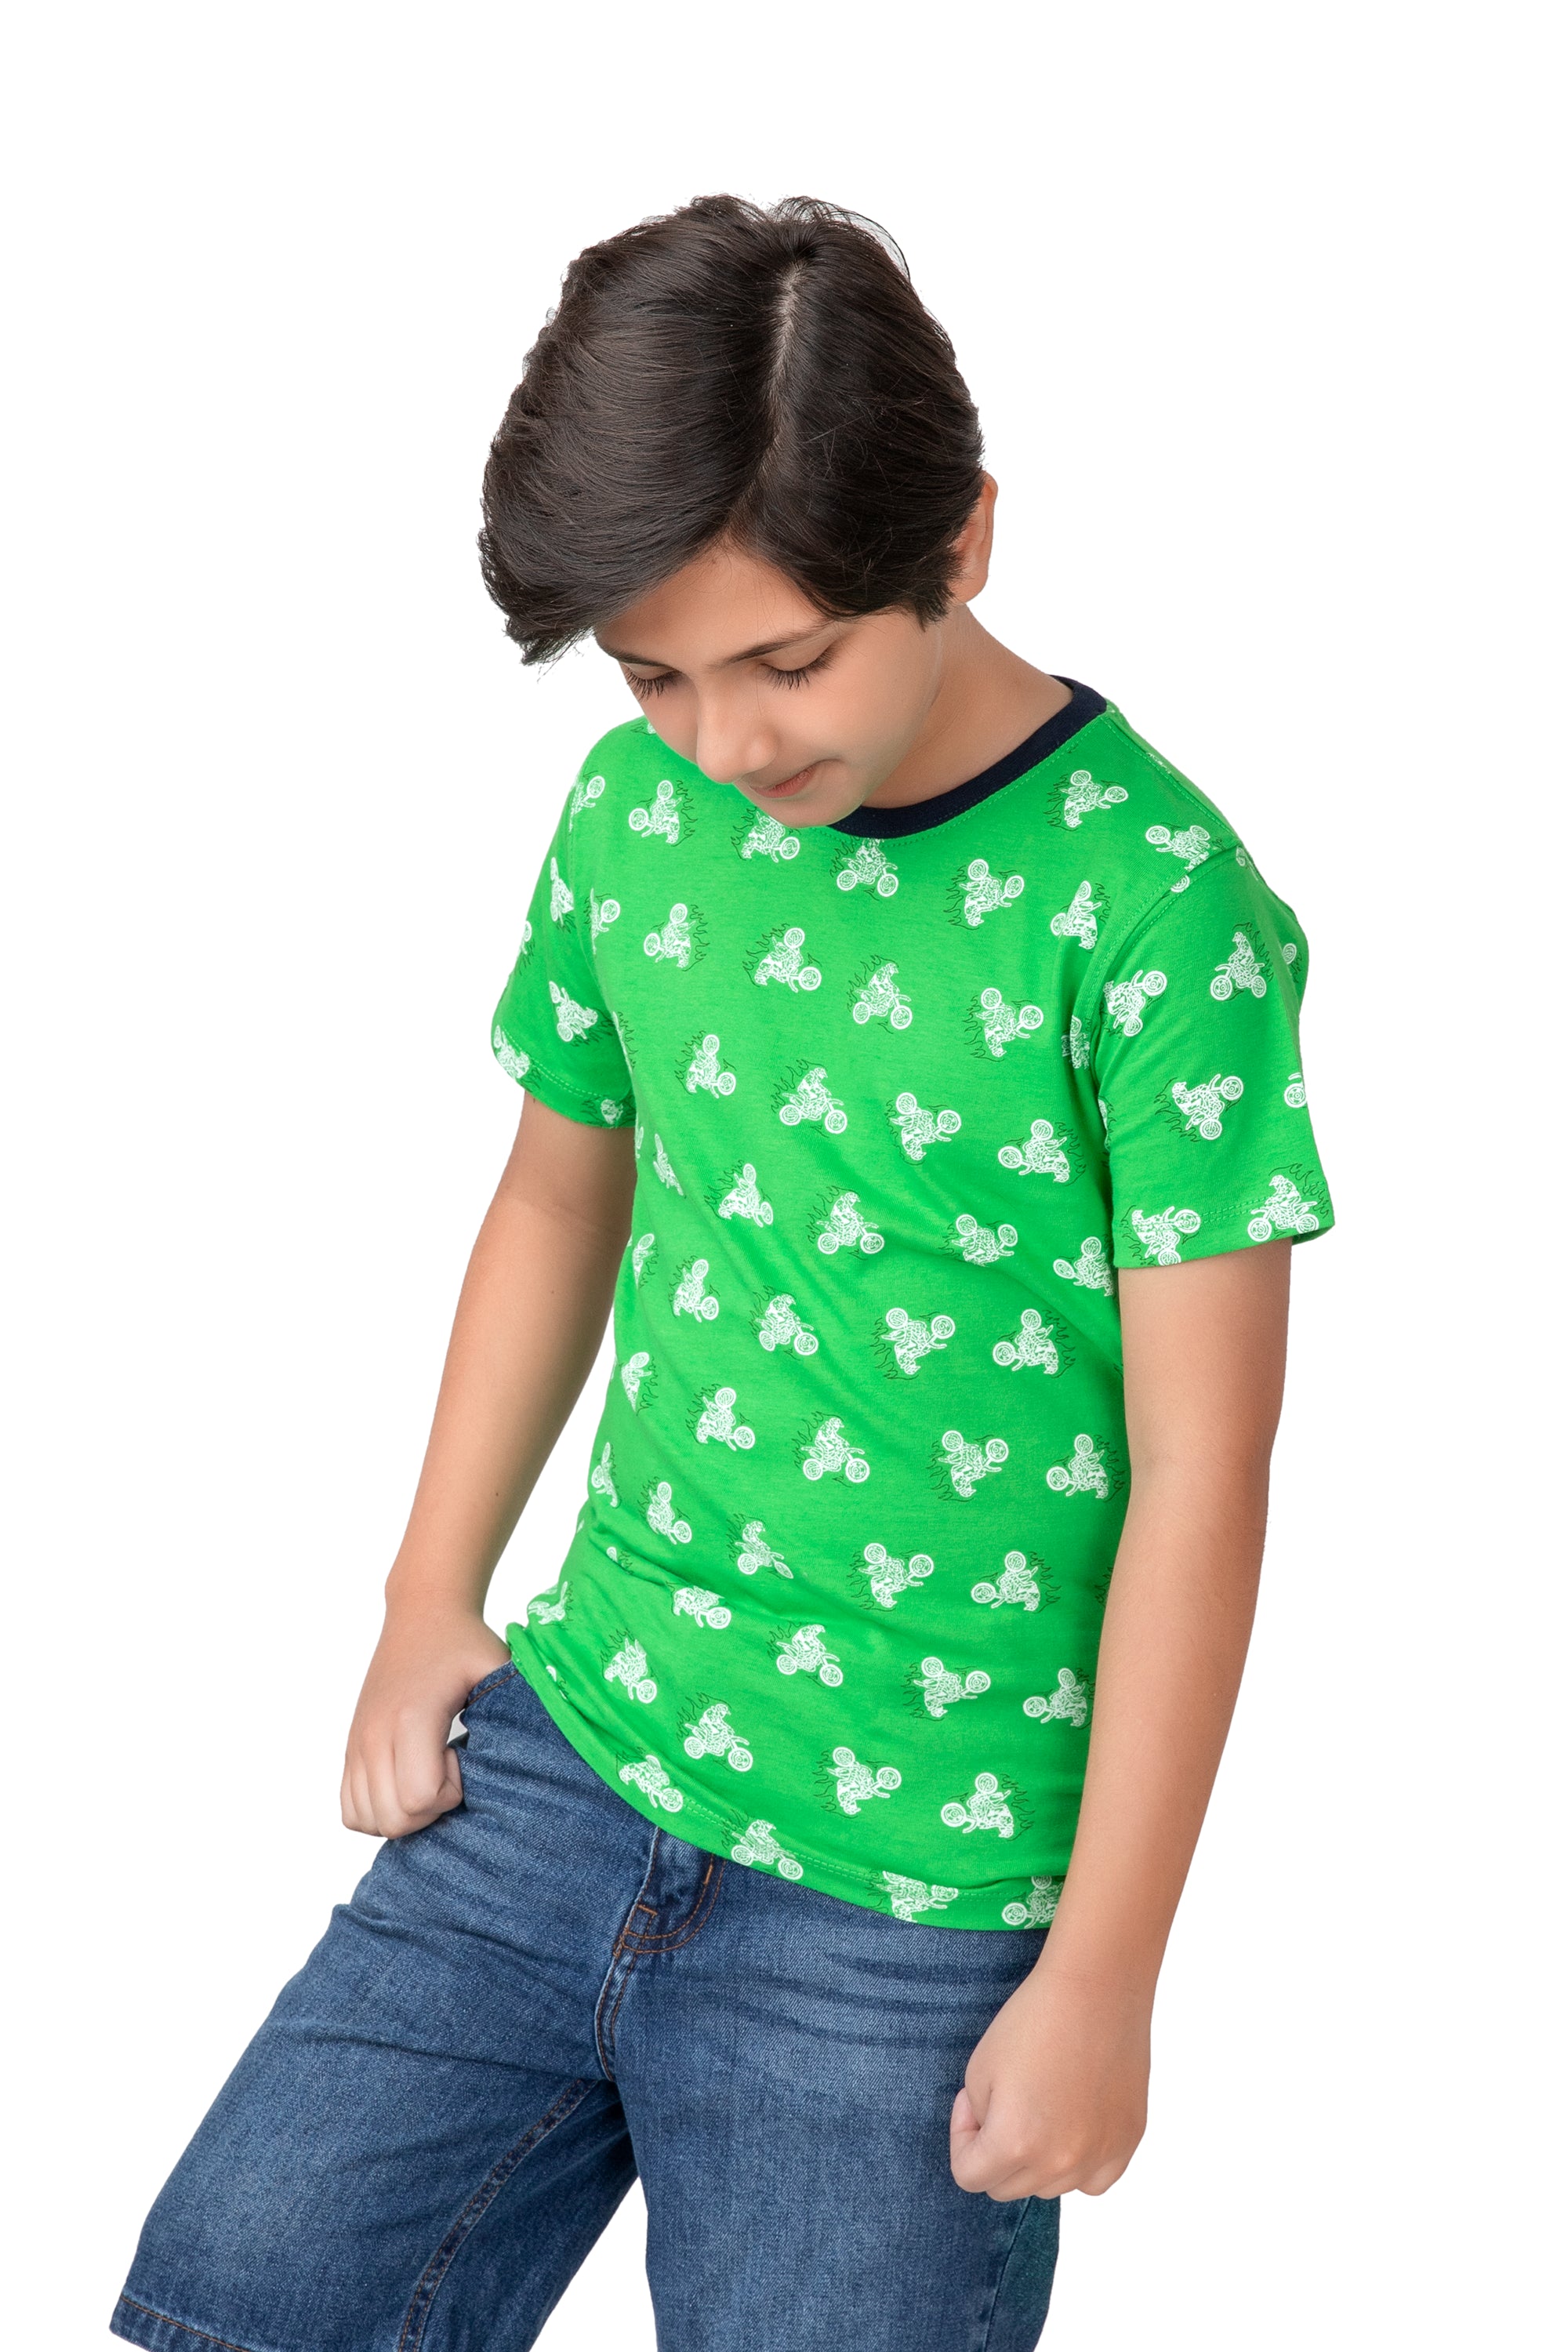 Boys Green Knit T-shirt